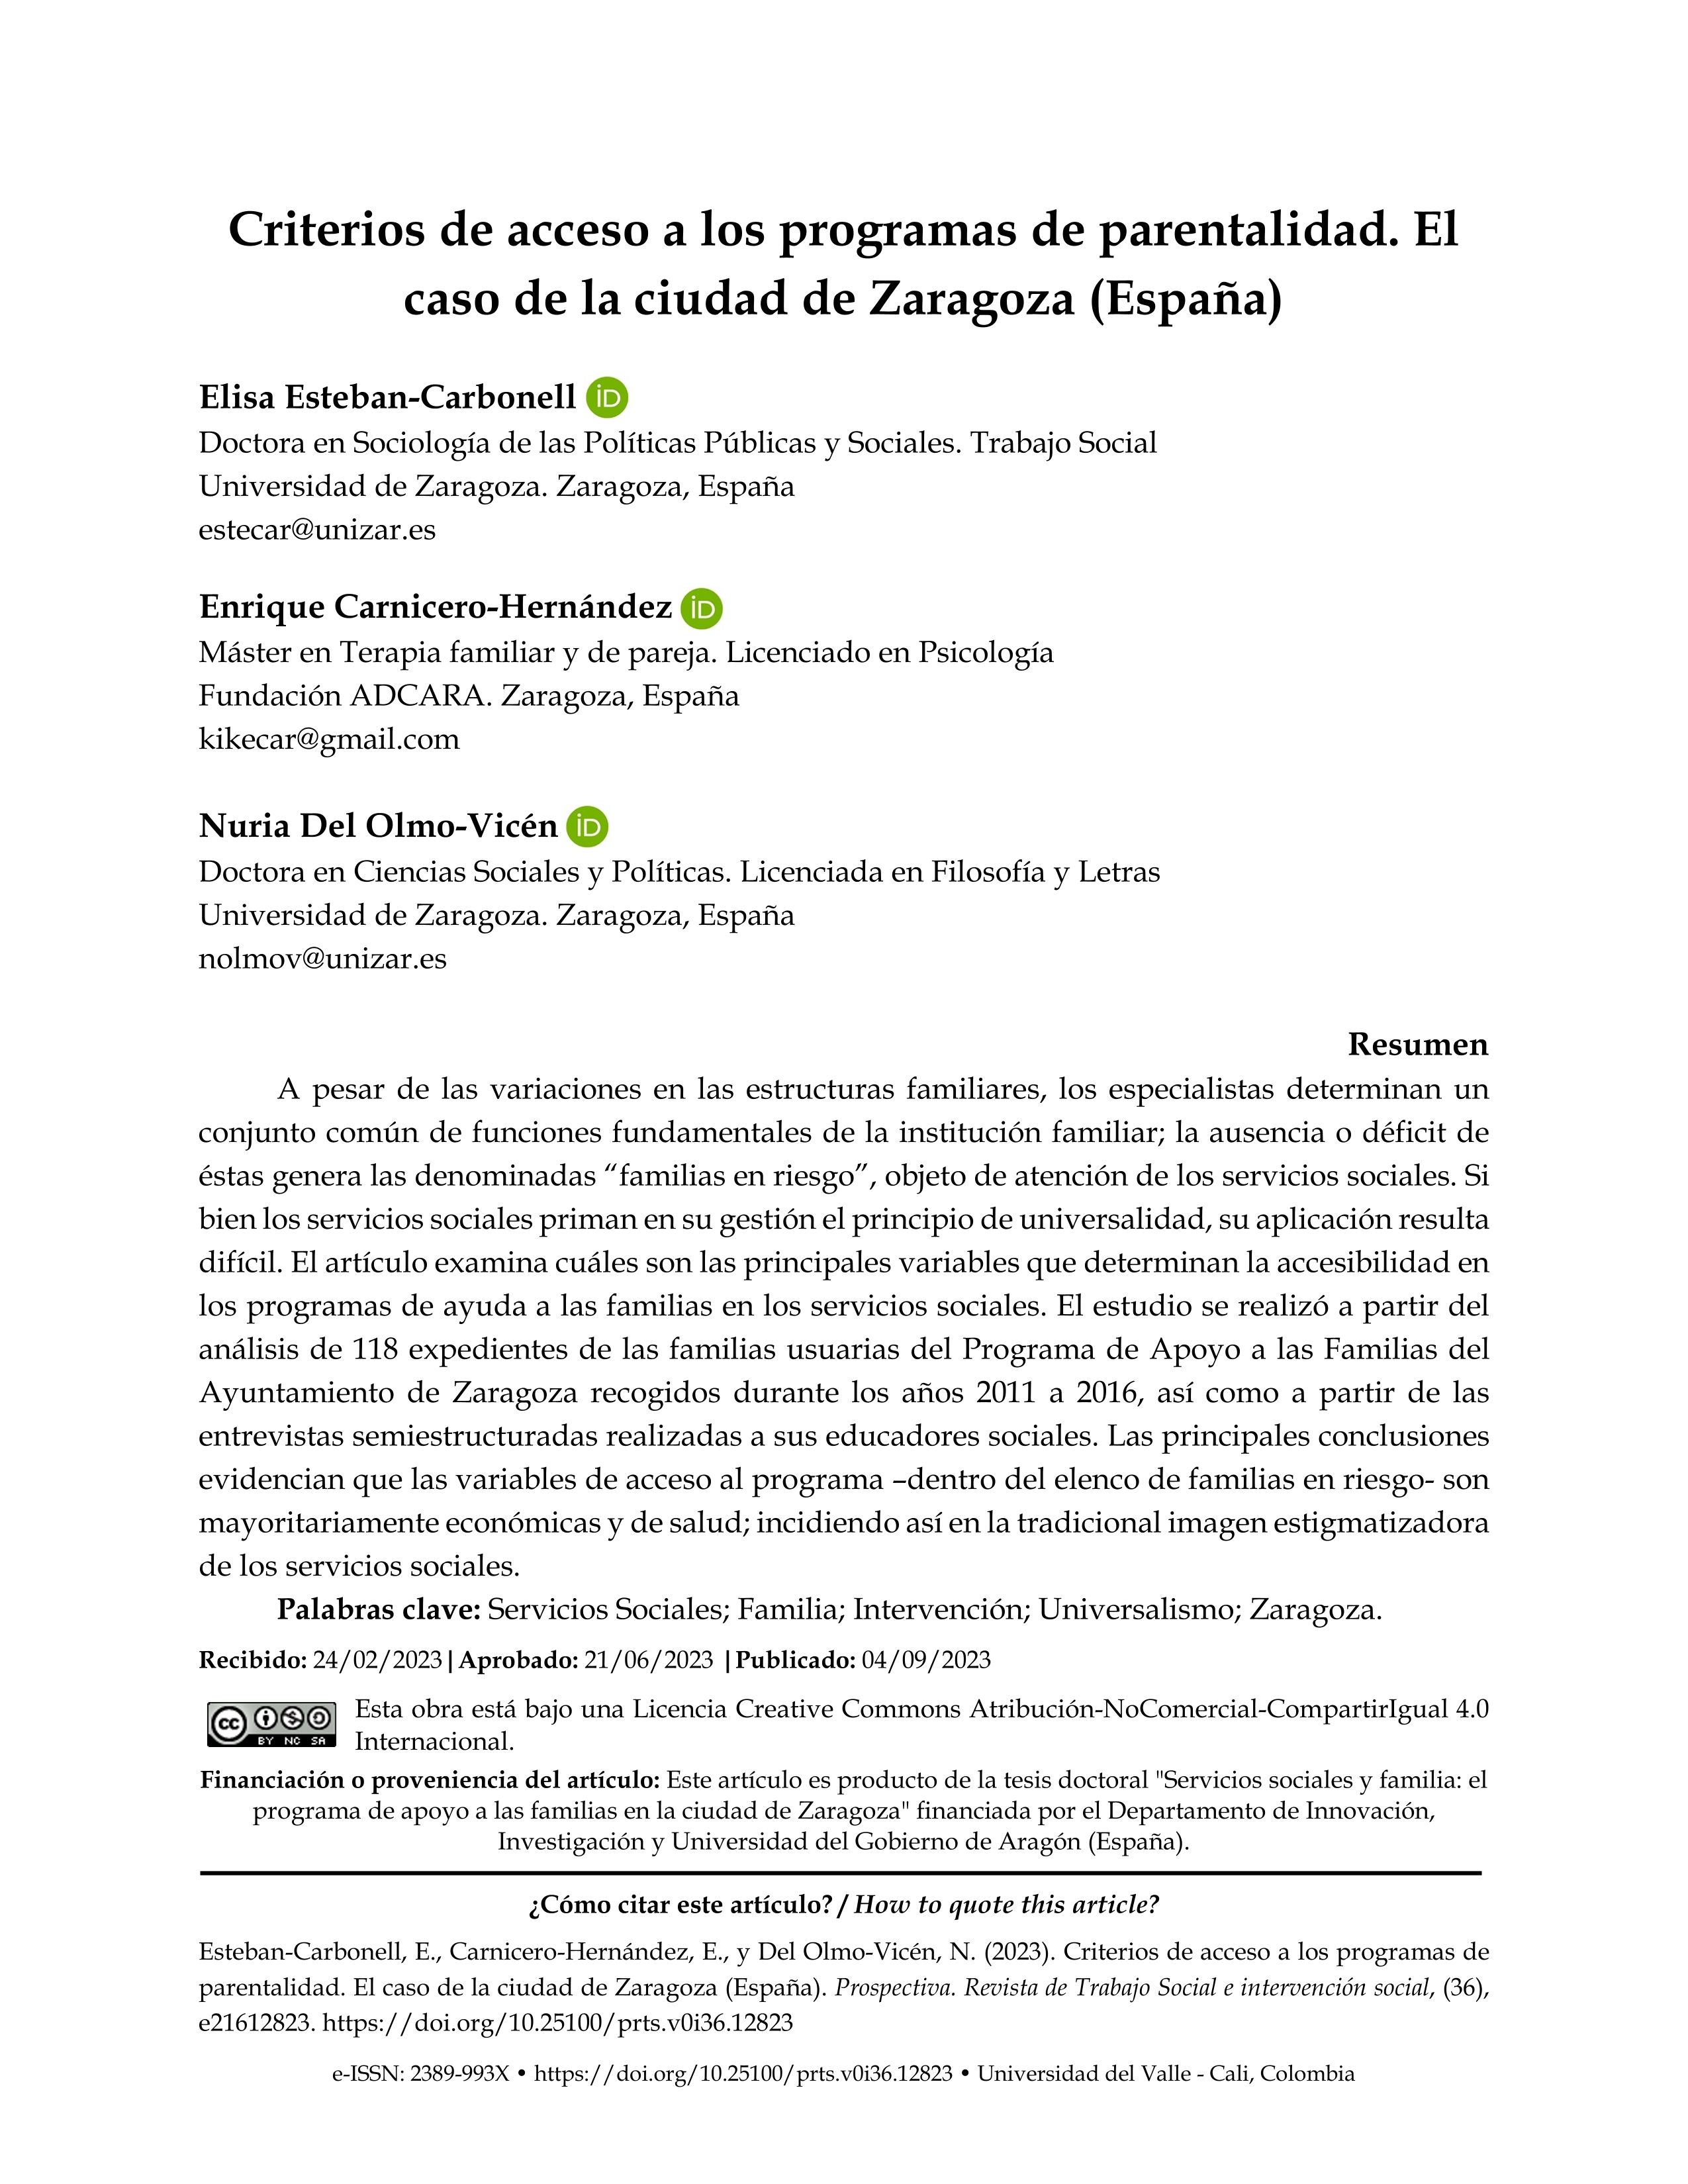 Criterios de acceso a los programas de parentalidad. El caso de la ciudad de Zaragoza (España)